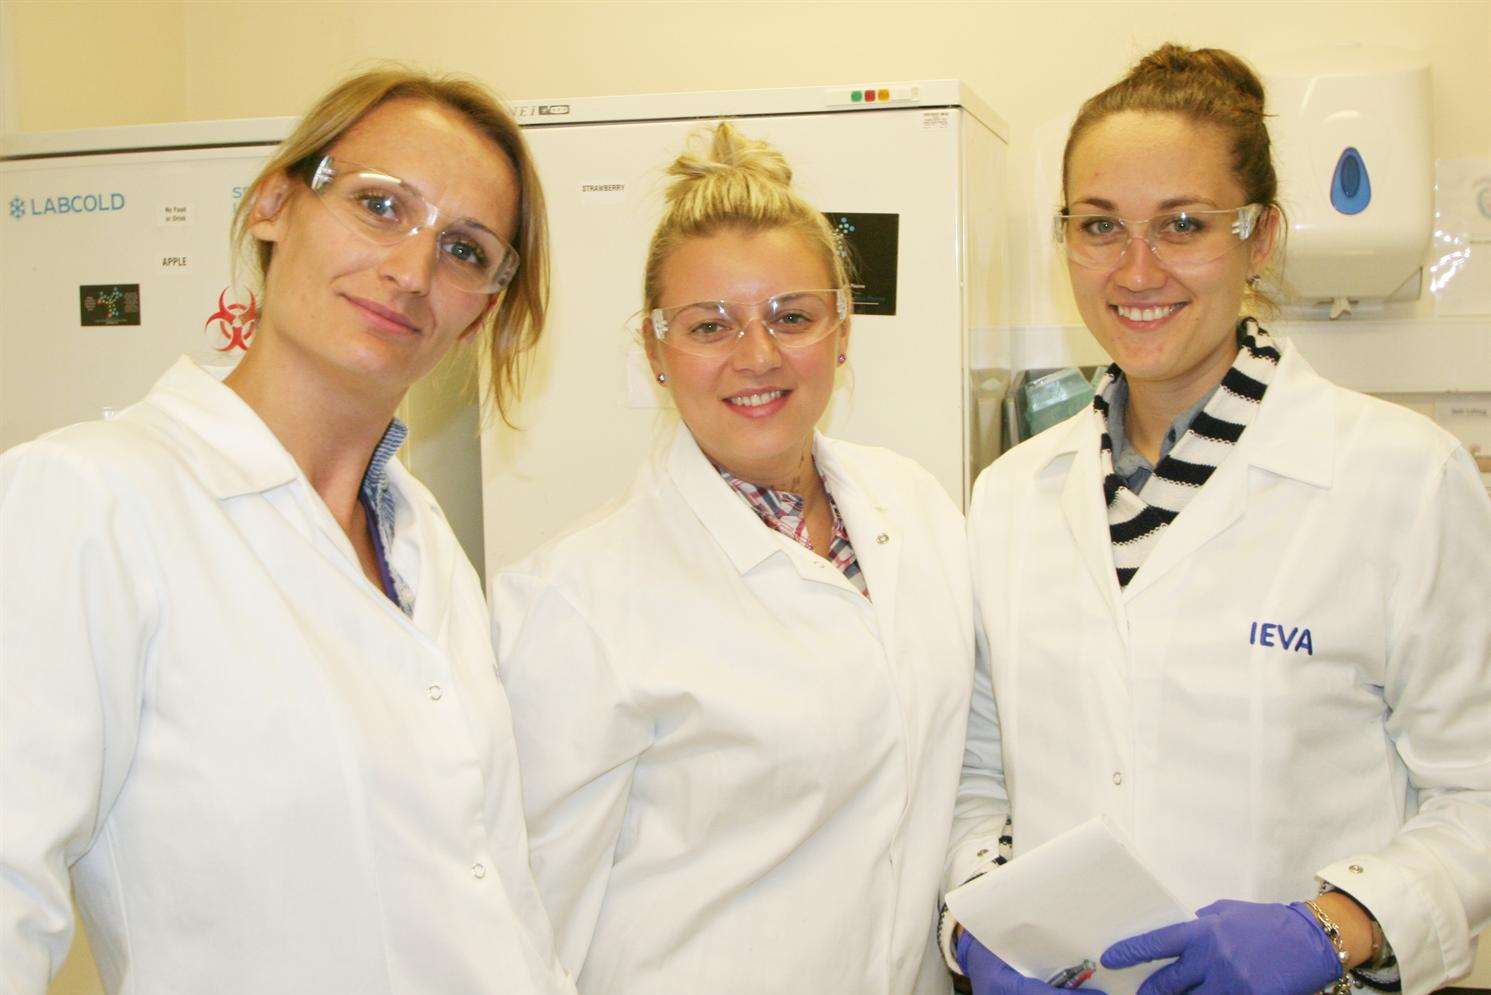 AbBaltis employees Katarzyna Hampelska, left, and Ieva Zi, right, with current work experience student Magdalana Klosinska